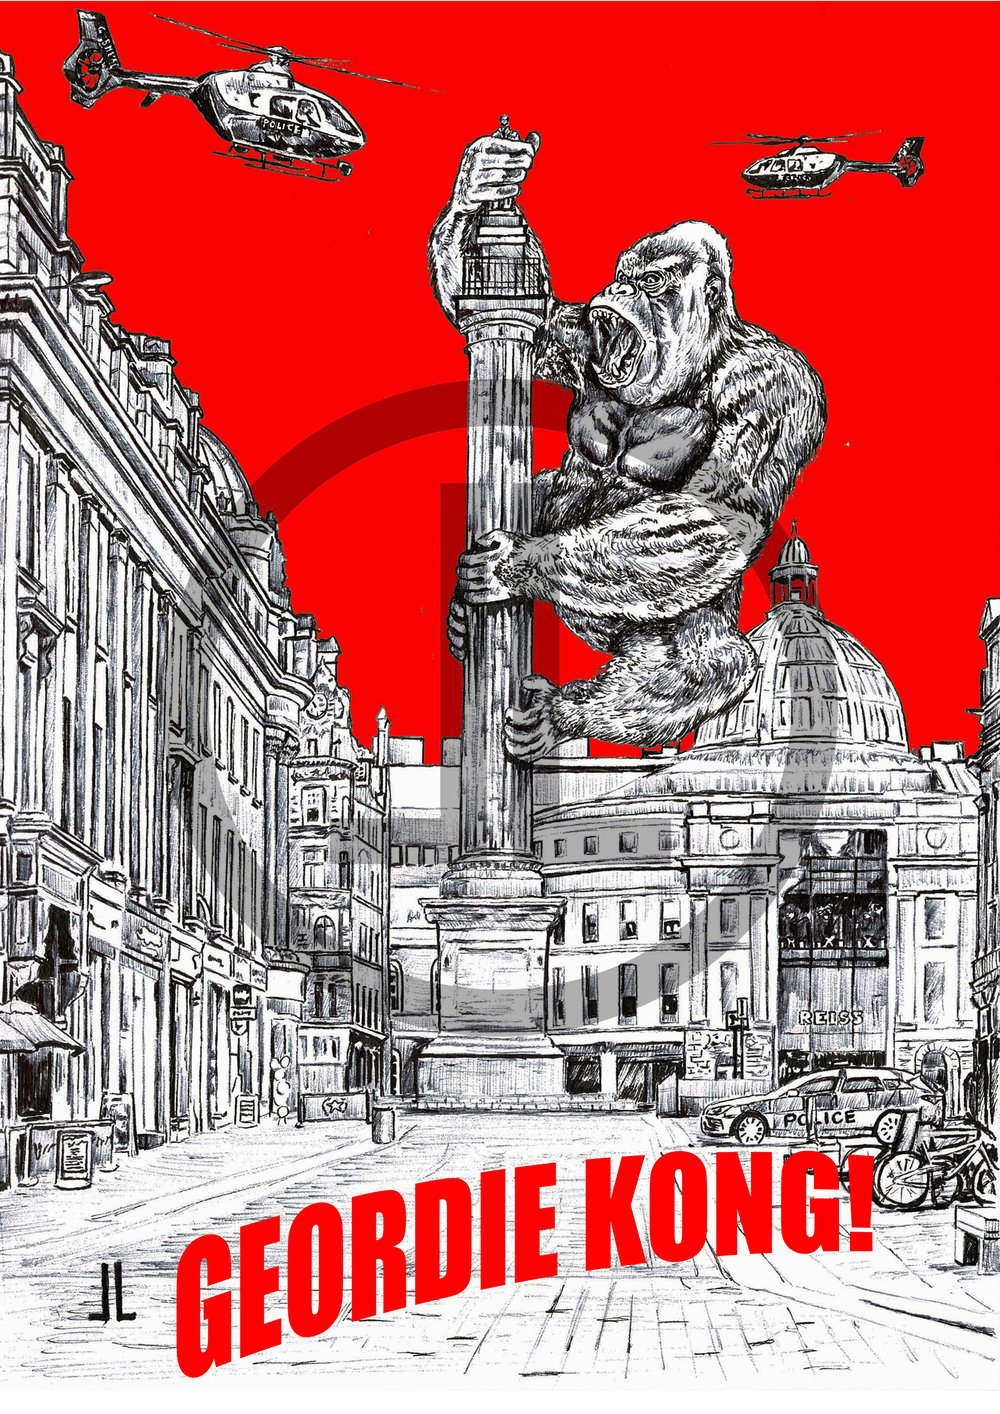 'Geordie Kong' - Newcastle